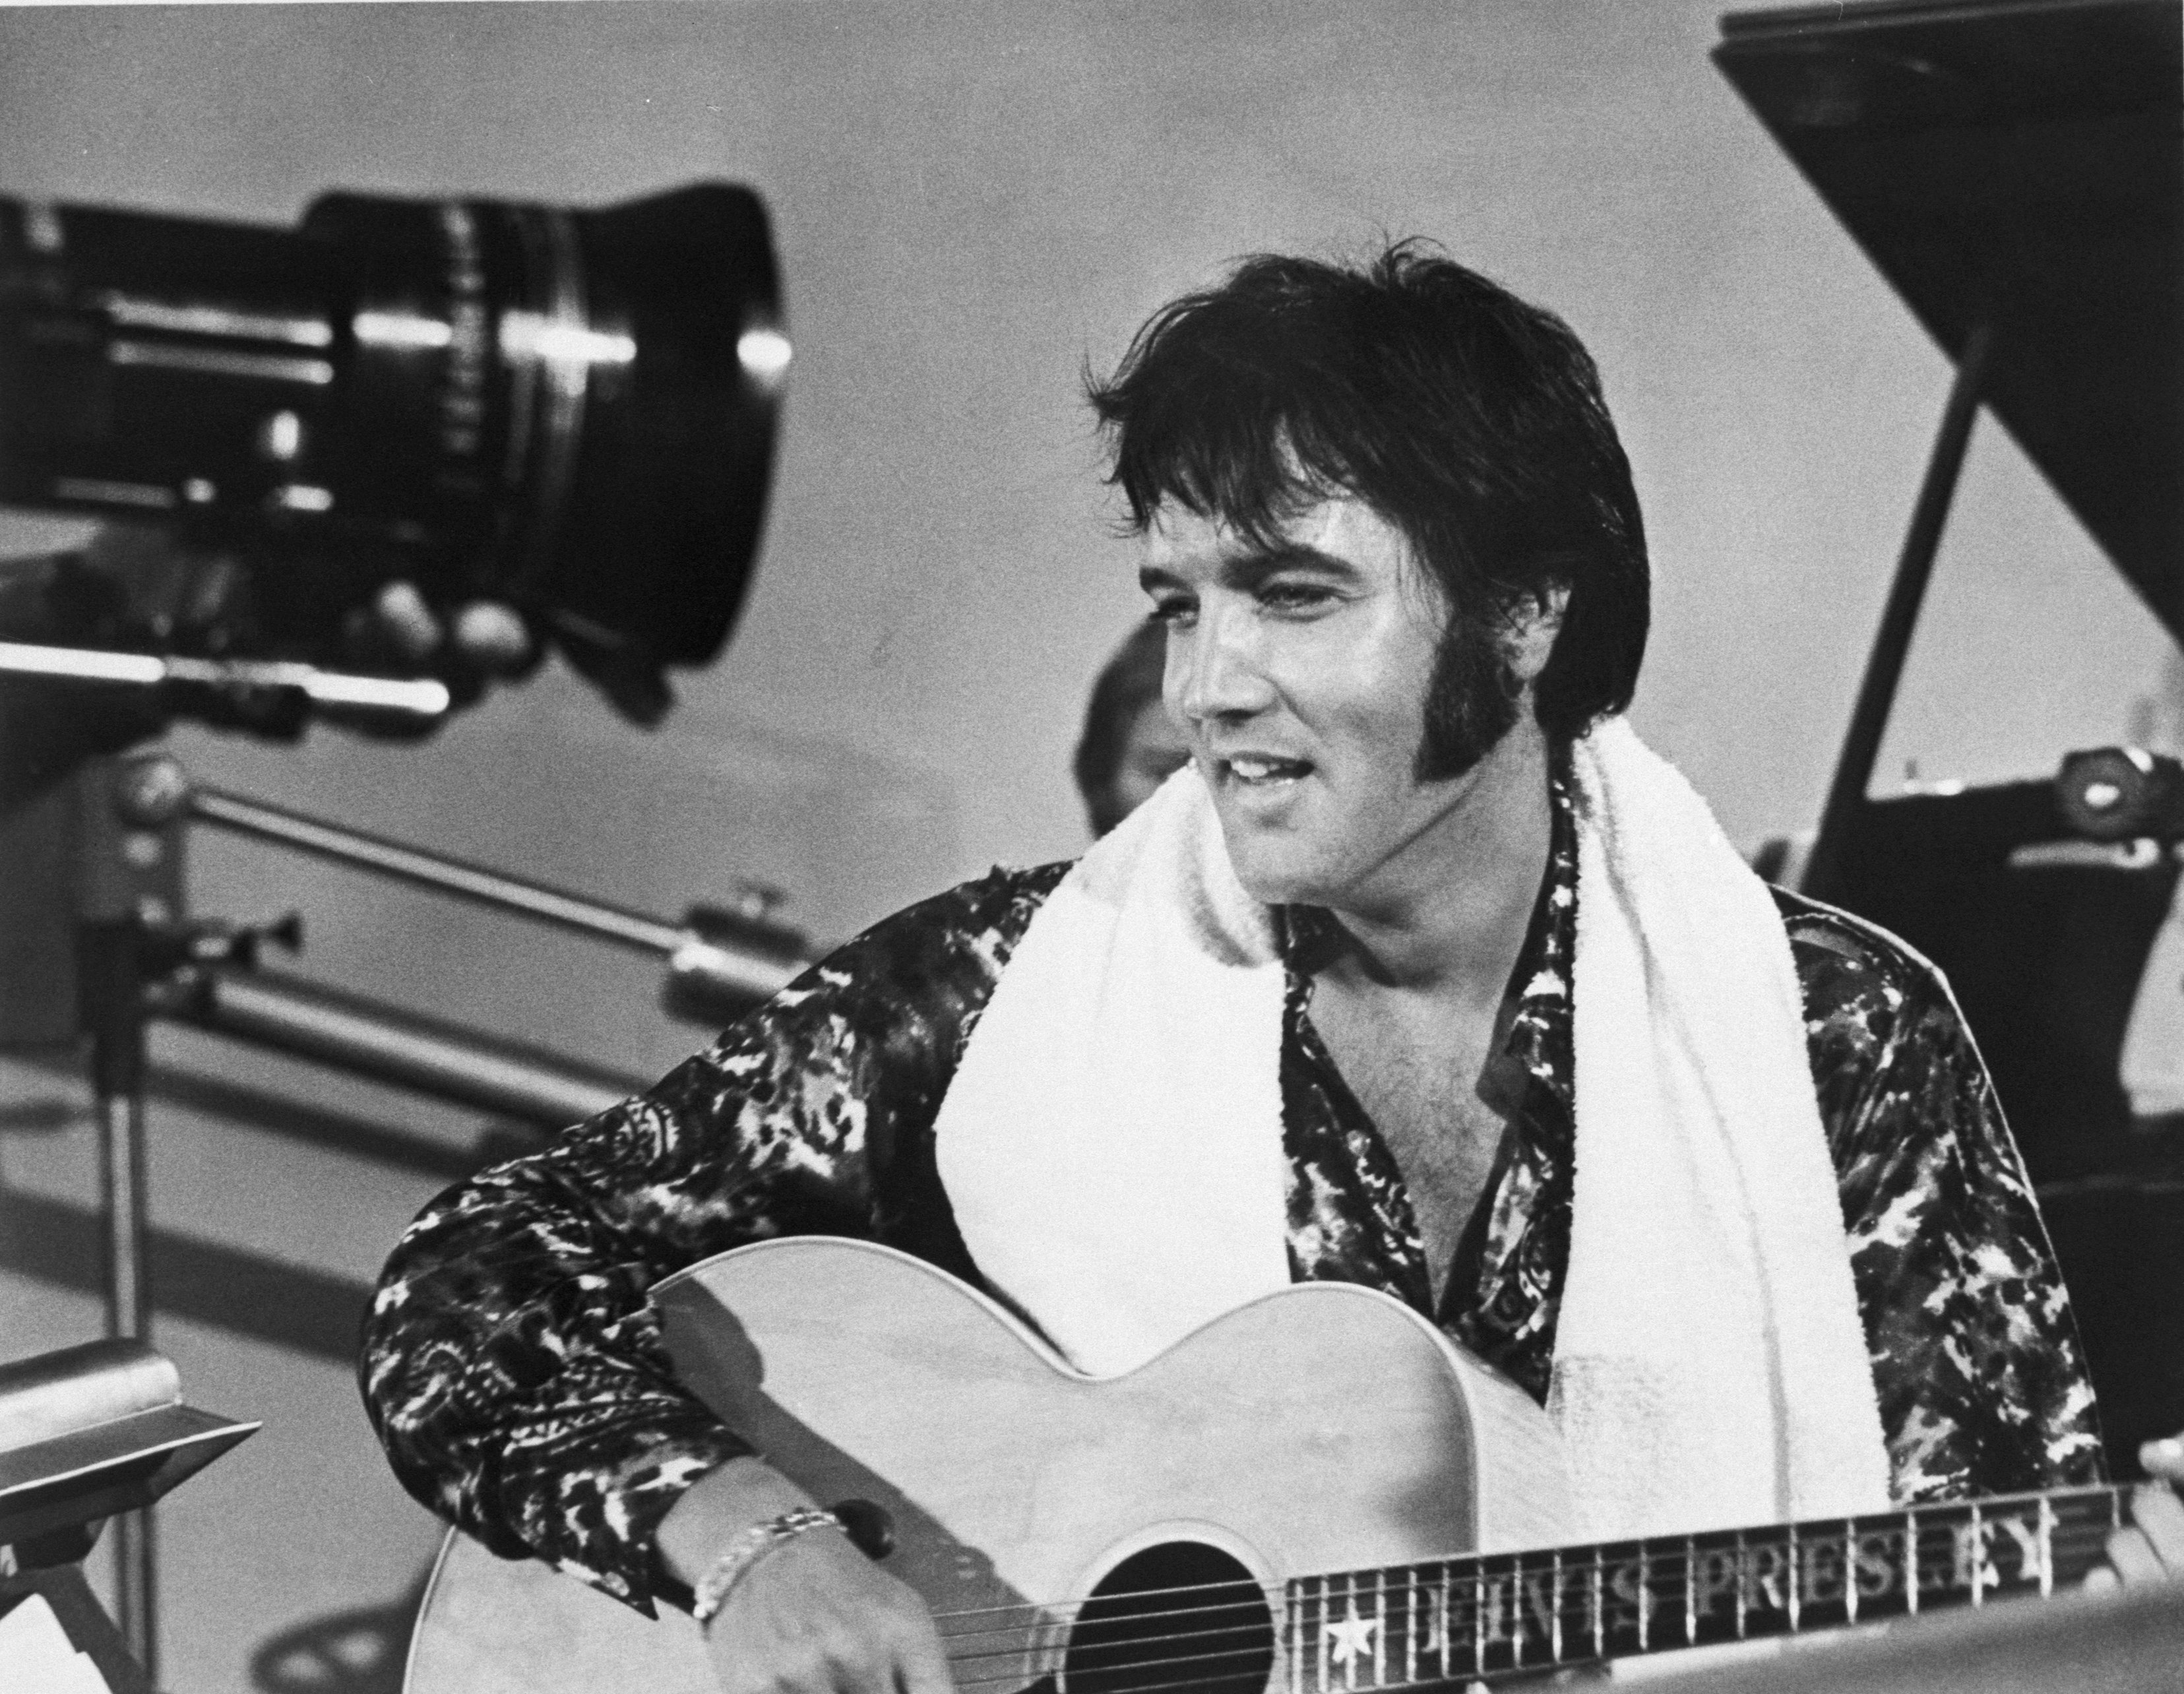 "All Shook Up" singer Elvis Presley holding a guitar